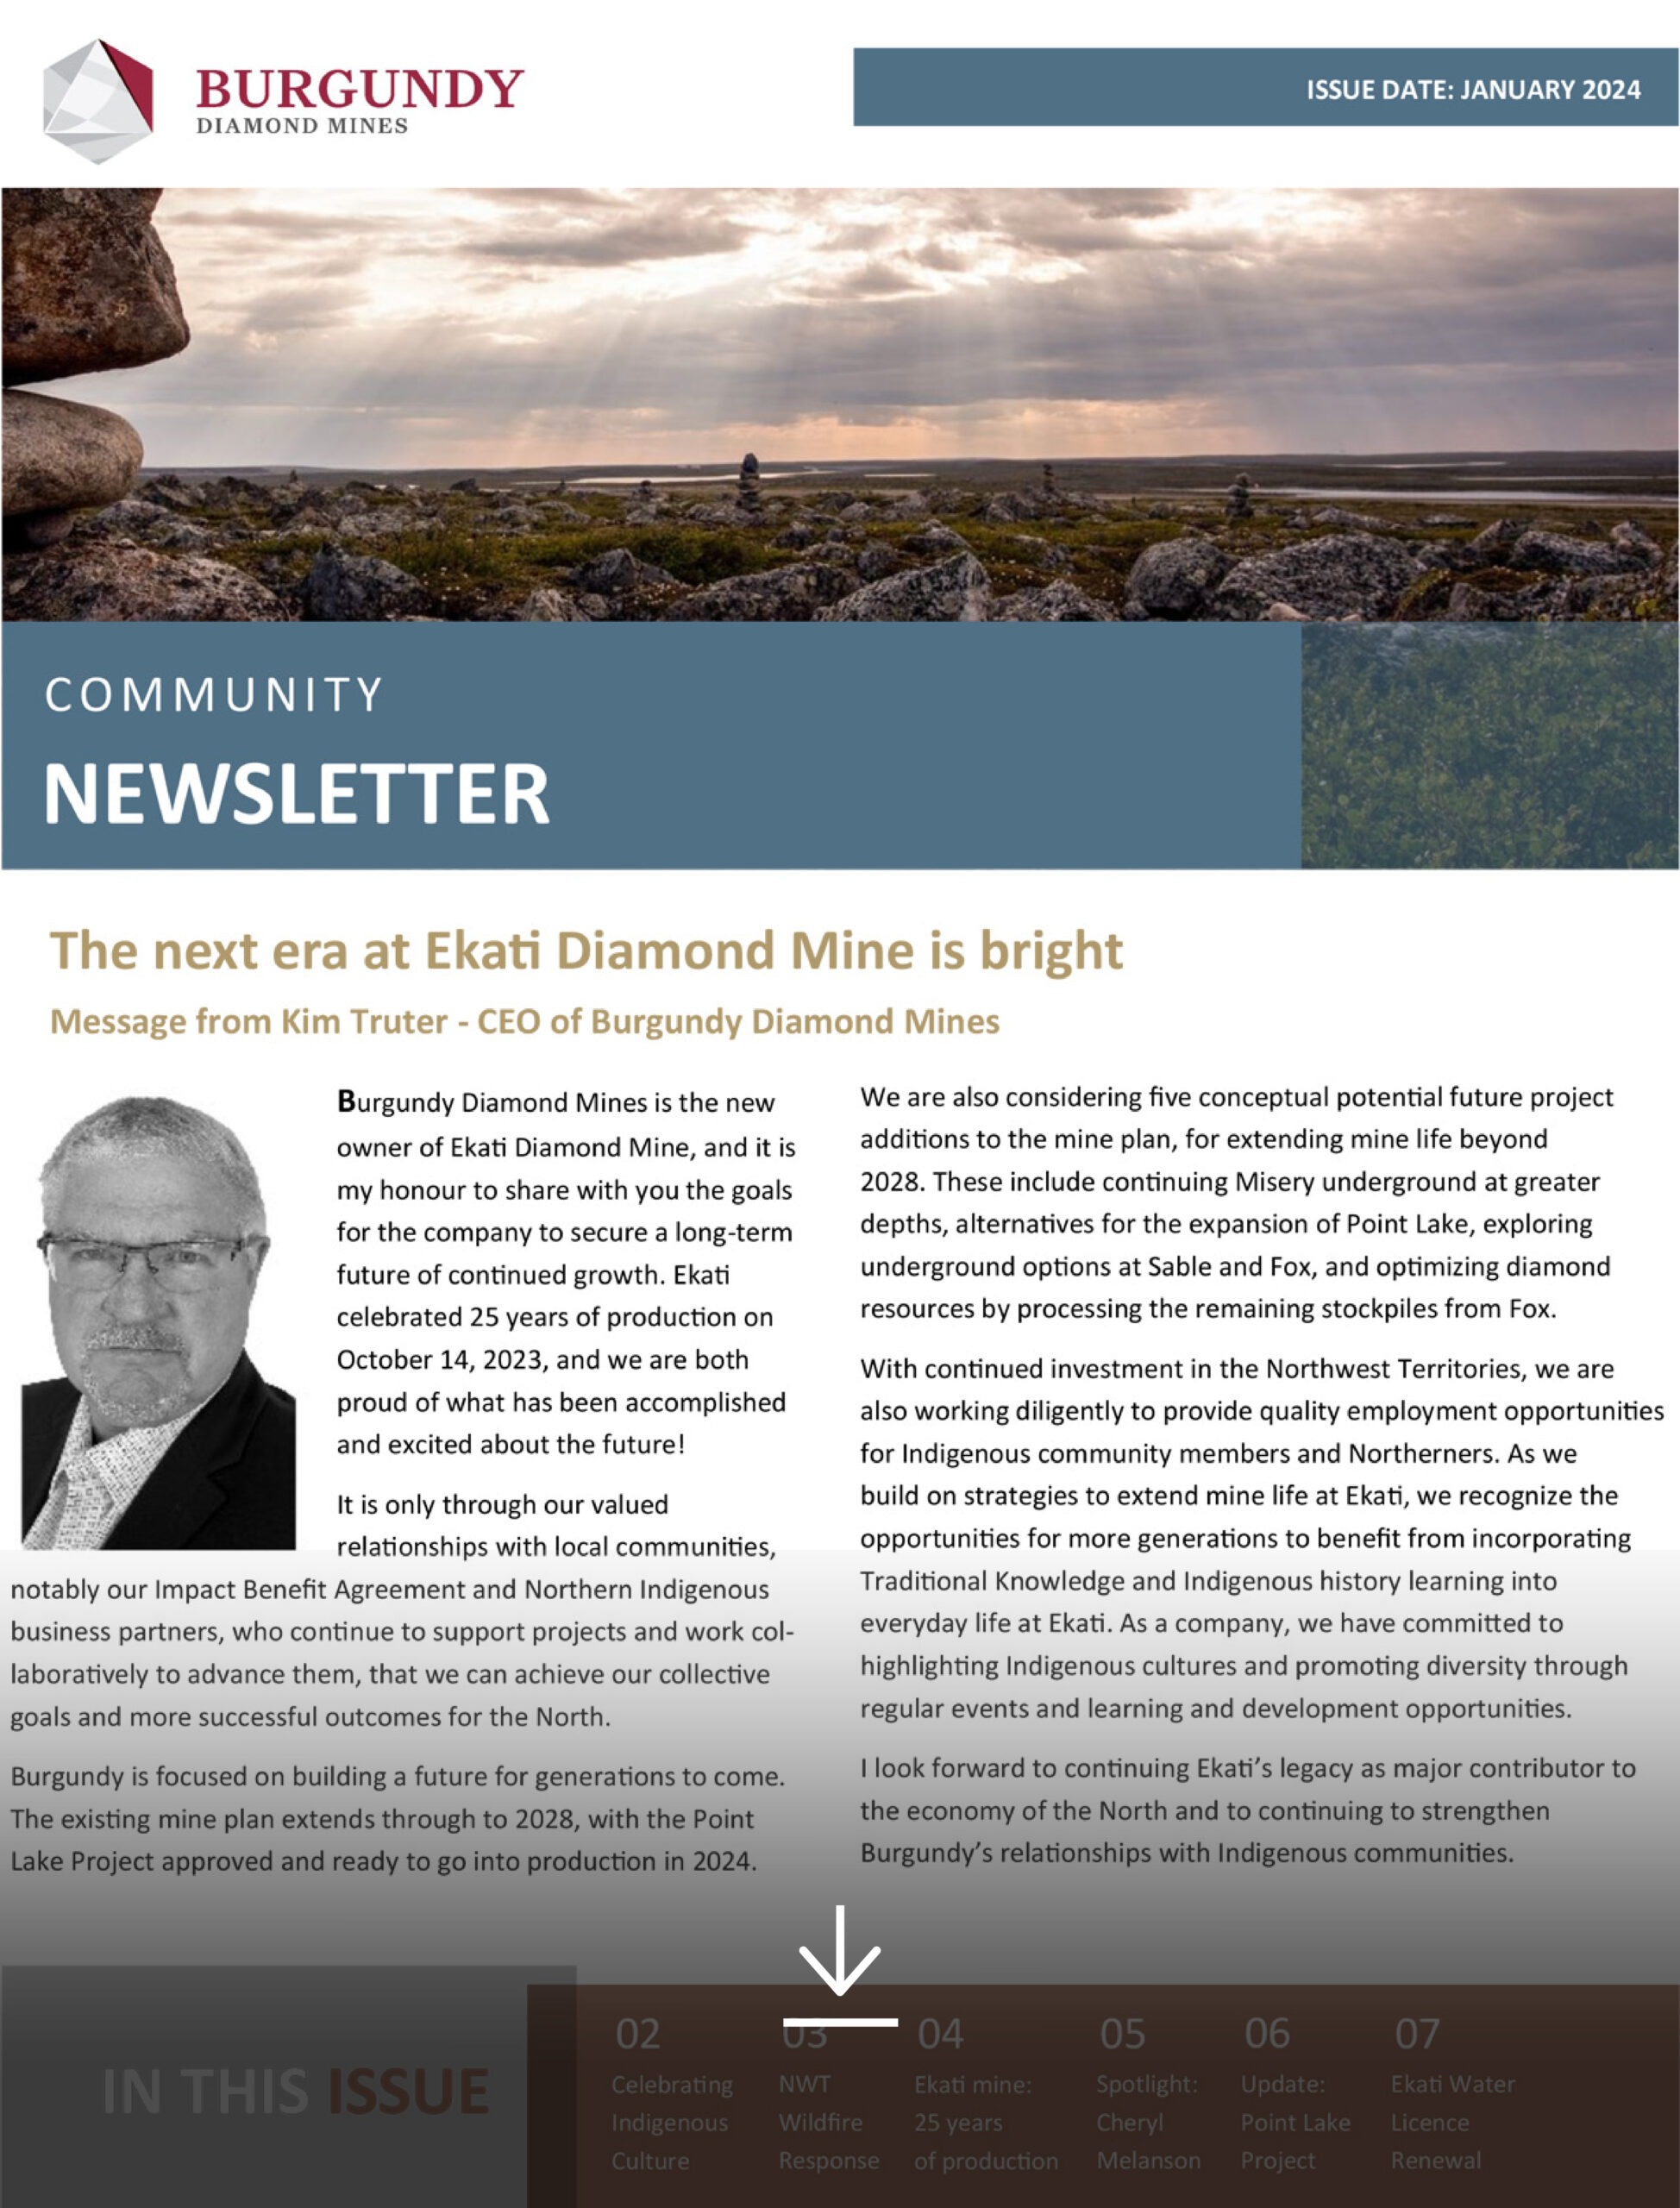 Community Newsletter cover for Burgundy Diamond Mines